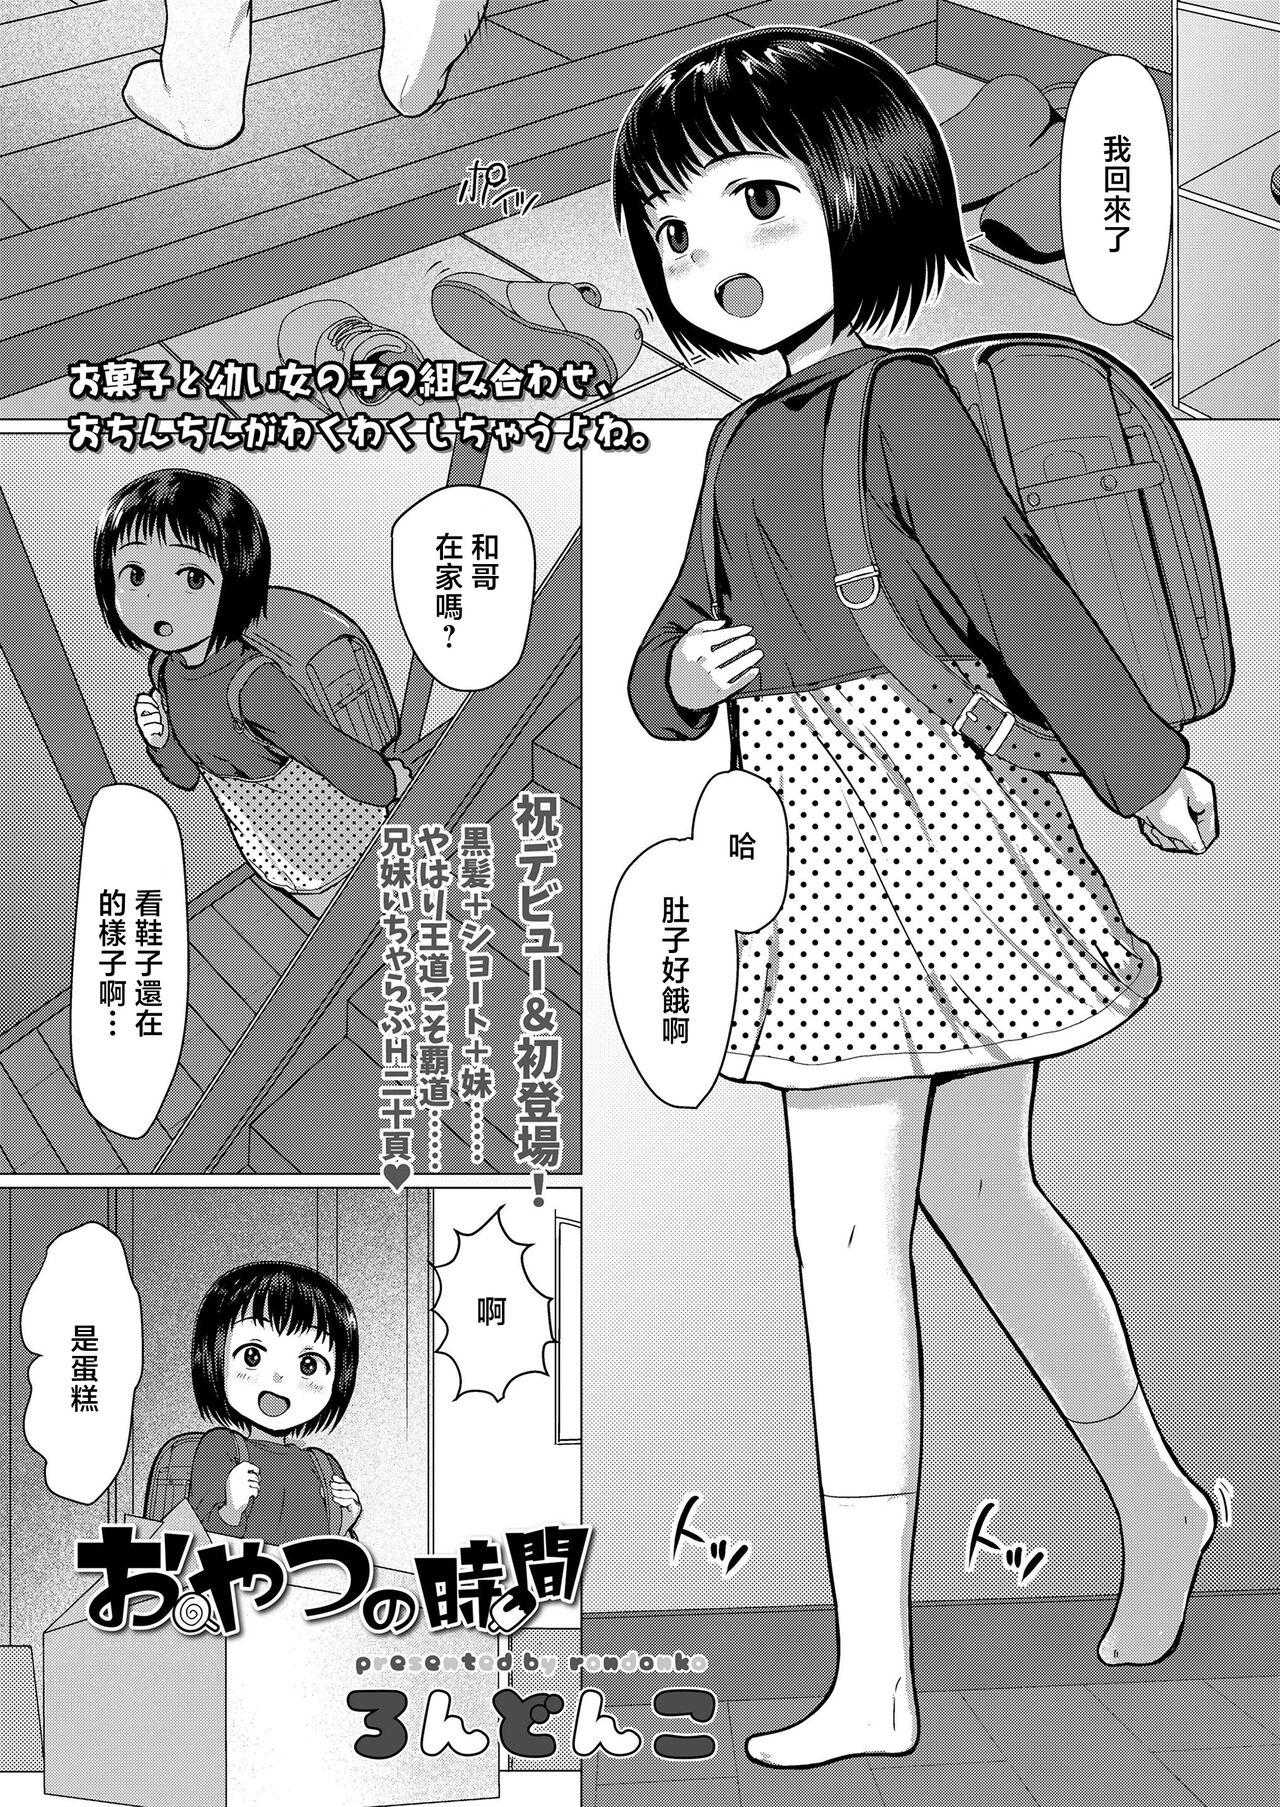 Hardcorend Oyatsu no Jikan Caught - Page 1